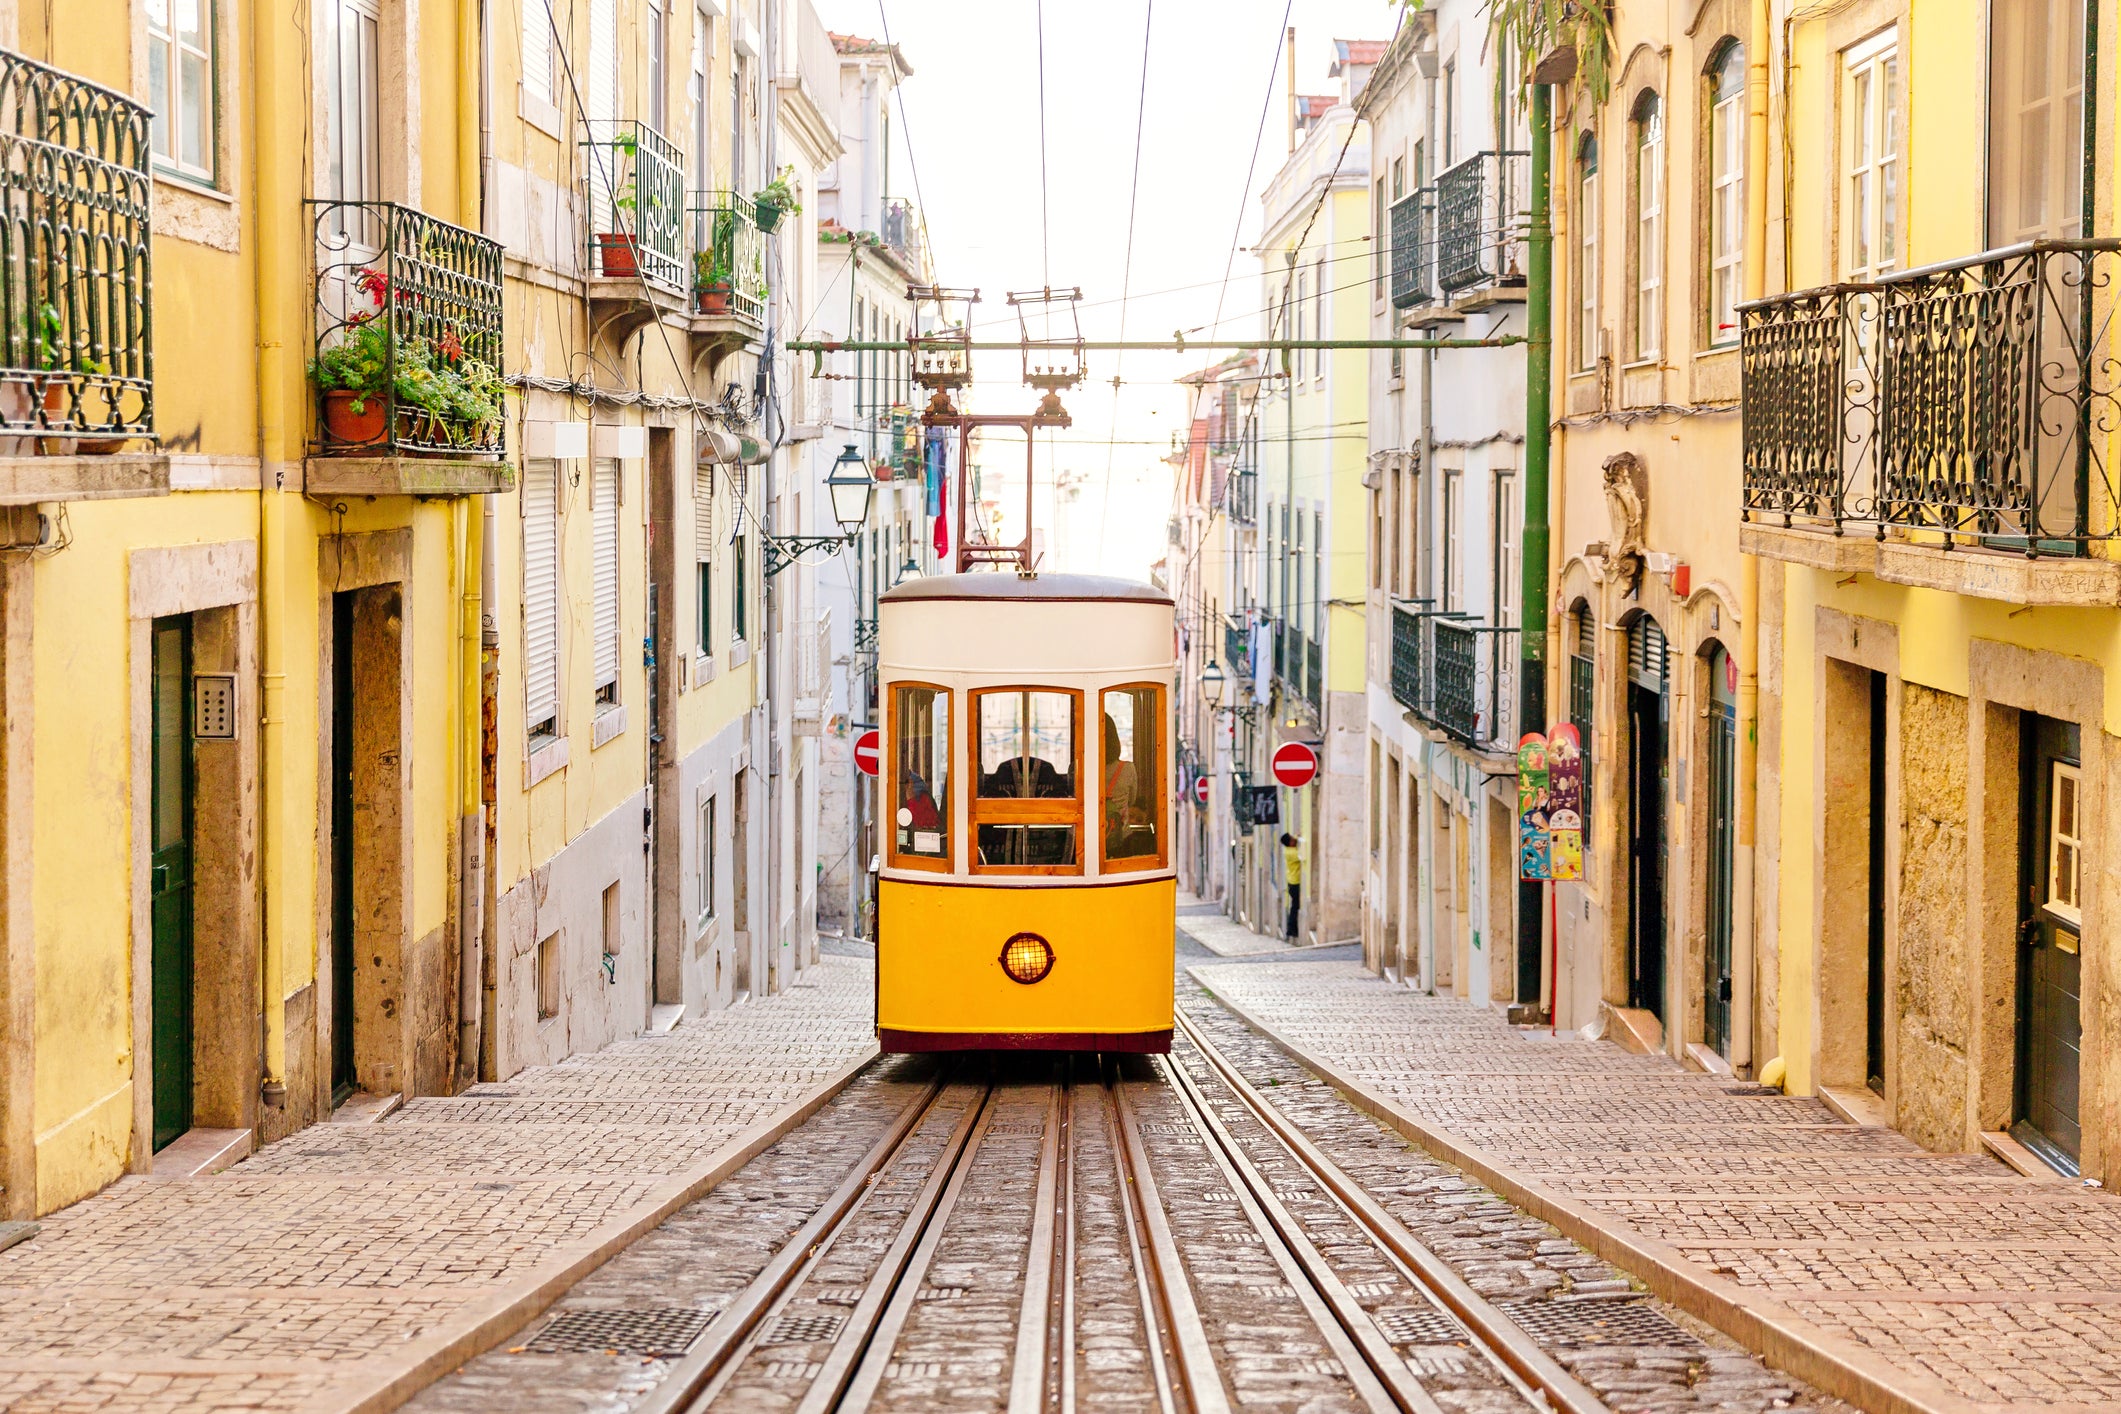 Elevador da Bica funicular in Lisbon, Portugal